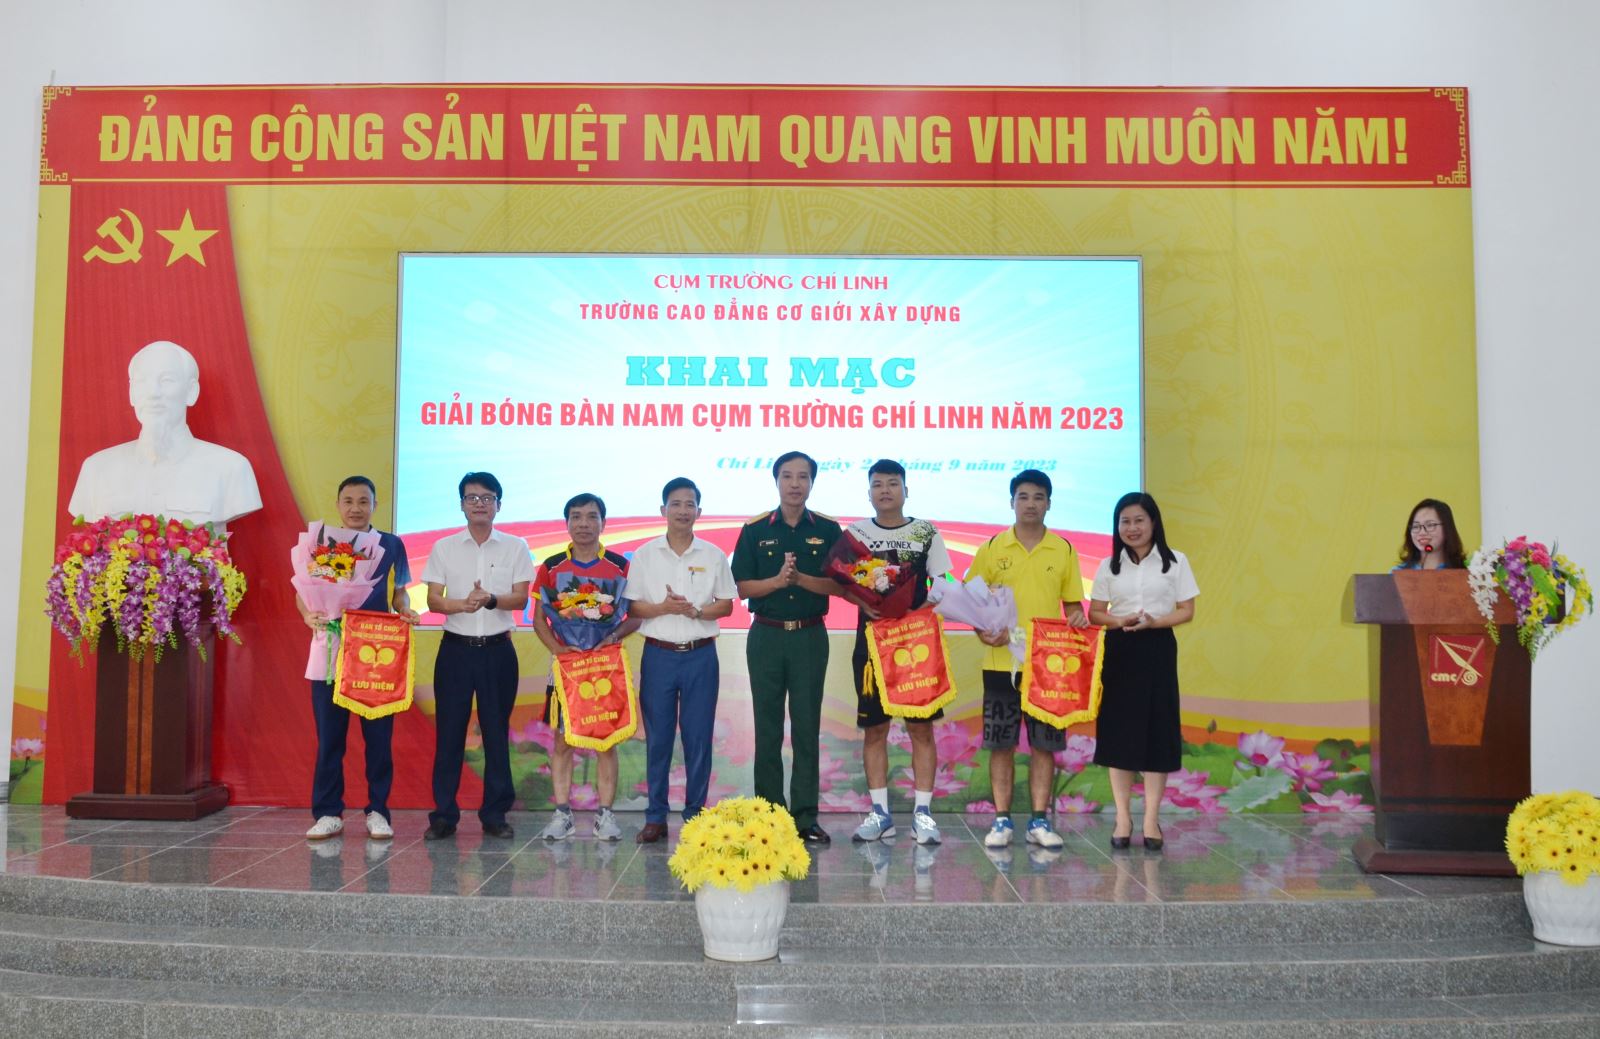 Giải thể thao cụm trường Chí Linh năm 2023